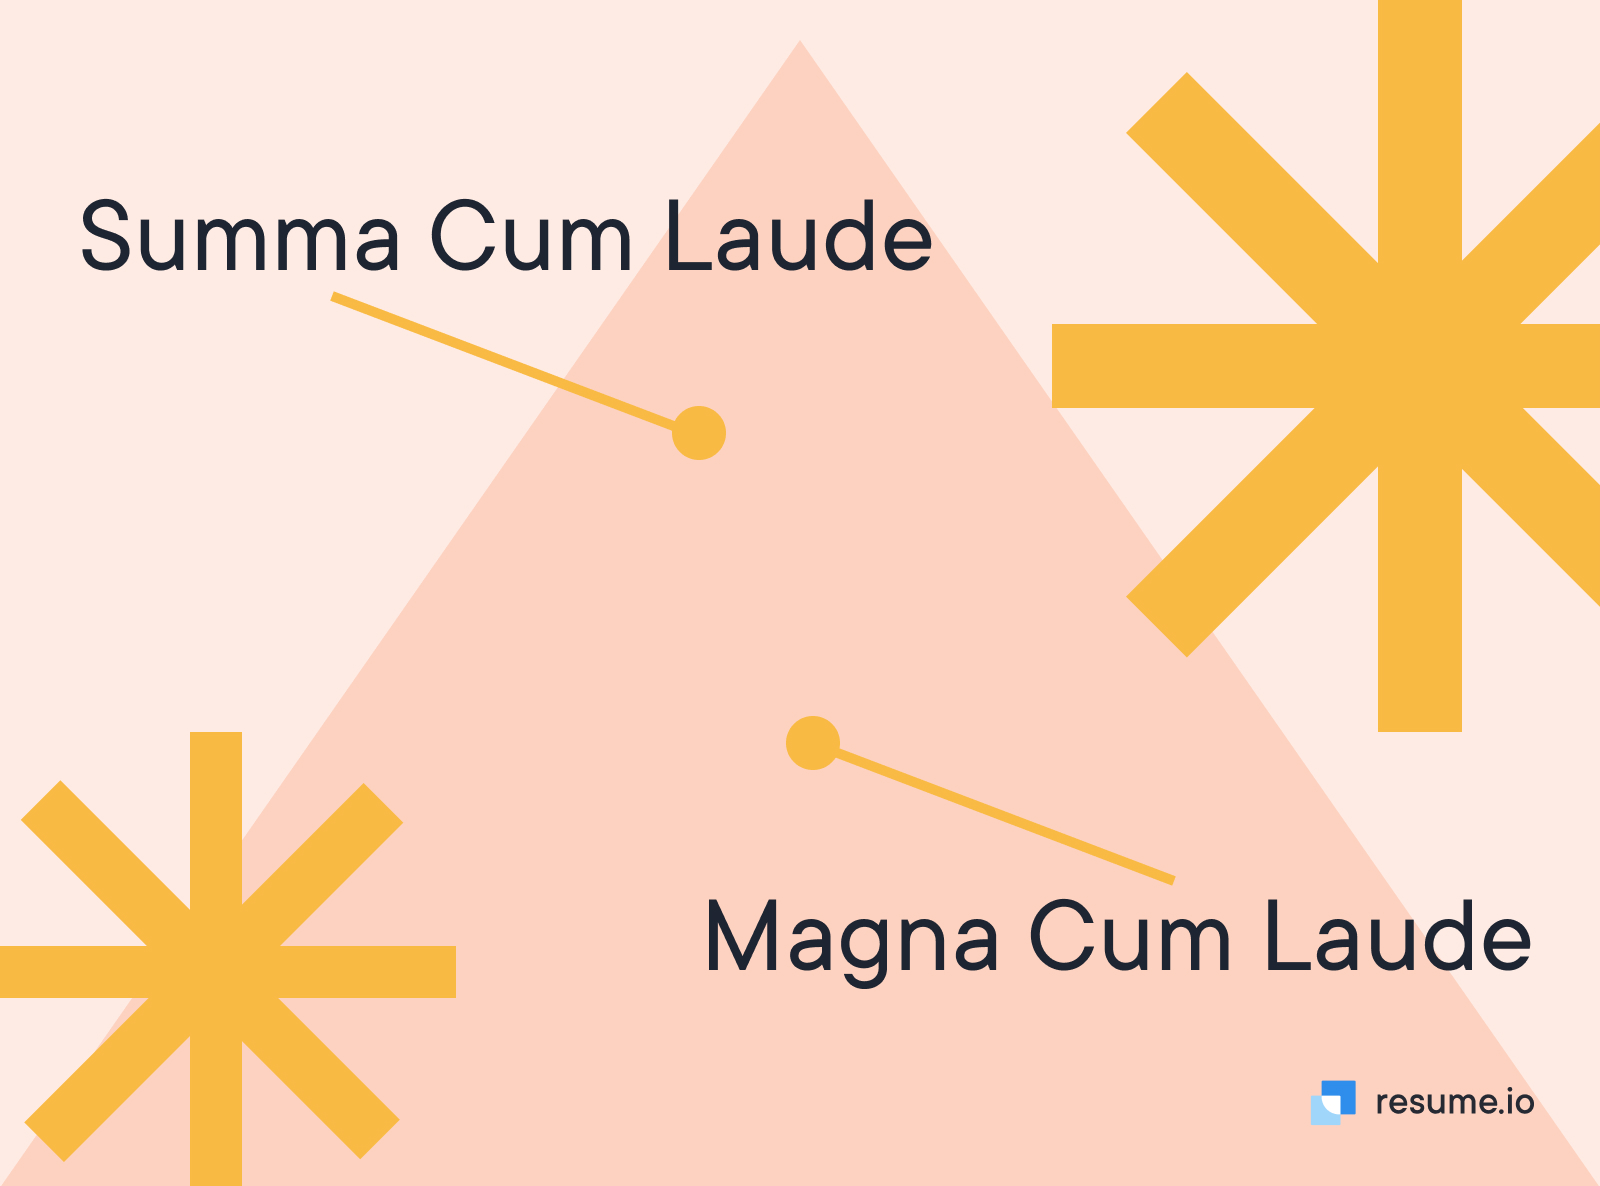 Summa Cum Laude vs. Magna Cum Laude